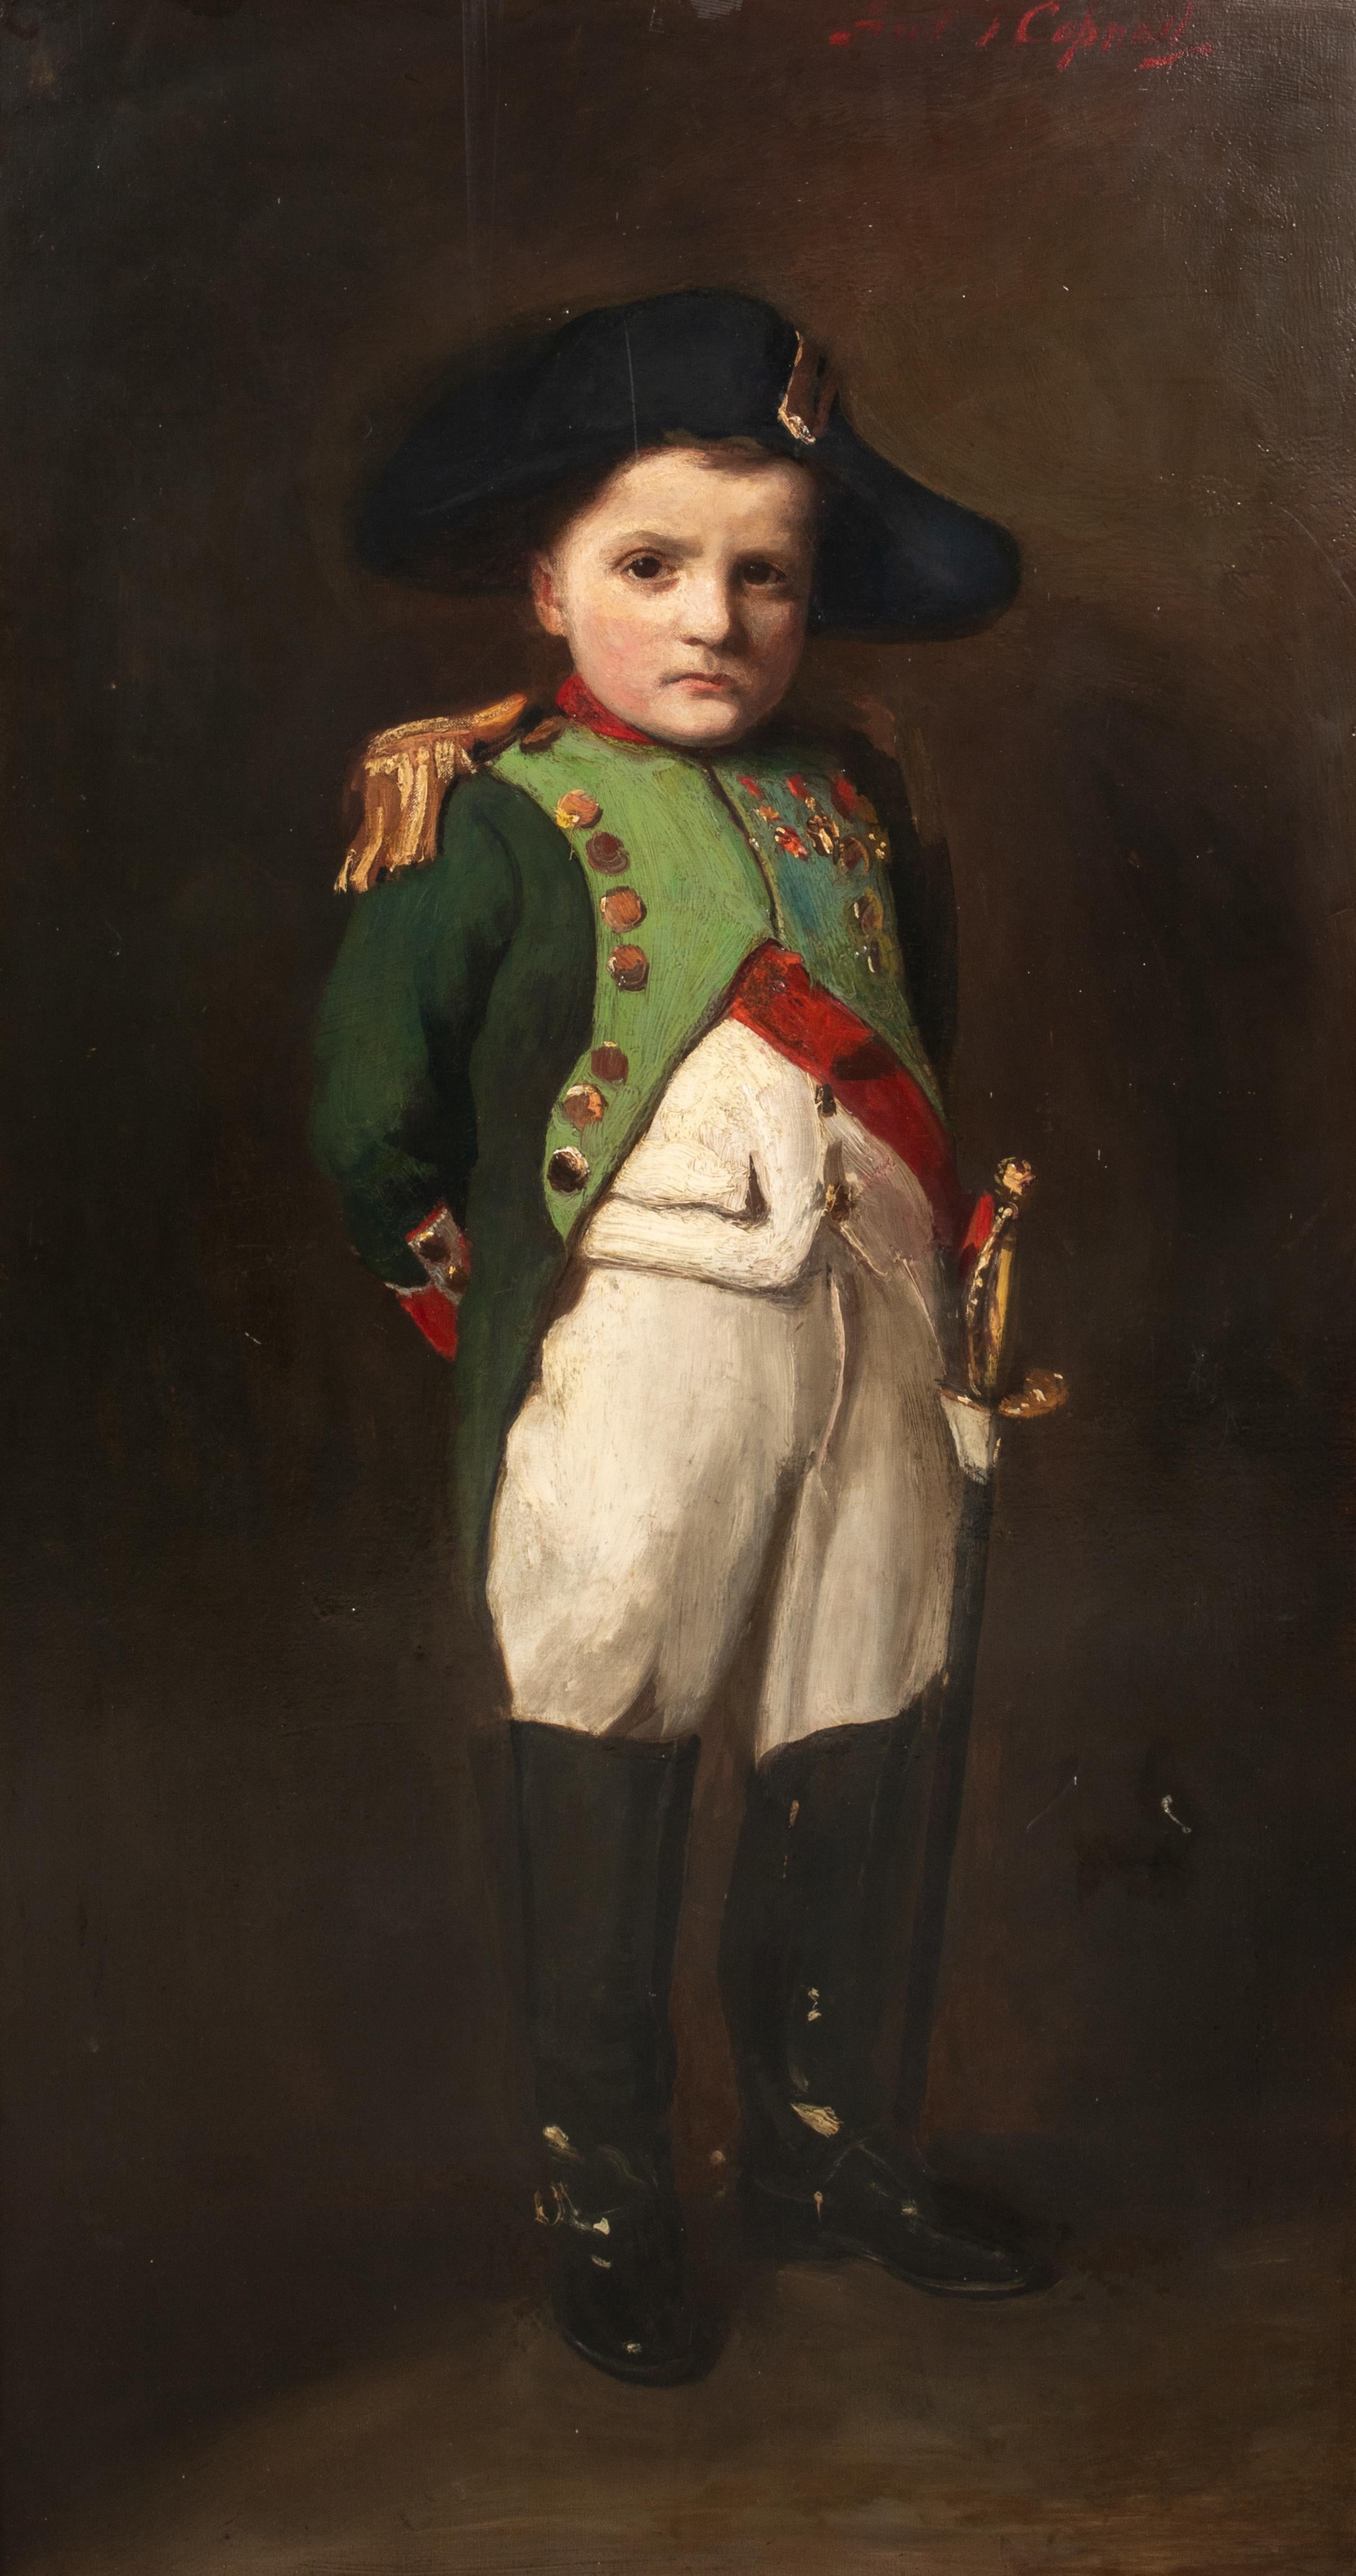 Portrait d'un enfant en Napoléon Bonaparte, 17e siècle 

FRANK THOMAS COPNALL (1870-1949) - une paire

Grand portrait du 19e siècle d'un enfant représenté sous les traits de Napoléon Bonaparte, huile sur toile de Frank Thomas Copnall. Exemple majeur